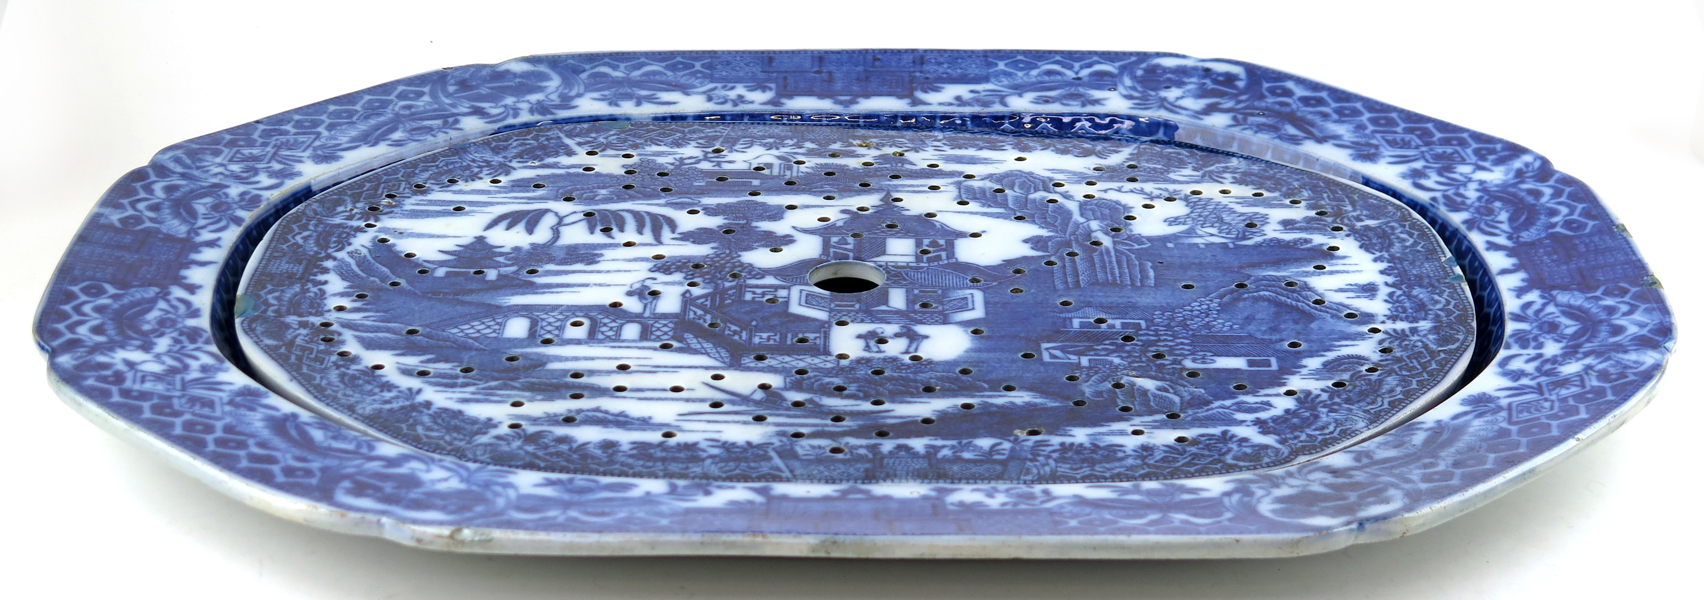 Stekfat med silfat, flintgods, Staffordshire, 1800-talets mitt, blå underglasyrdekor i Willowmotiv, _22621a_8da9bc8695106dc_lg.jpeg